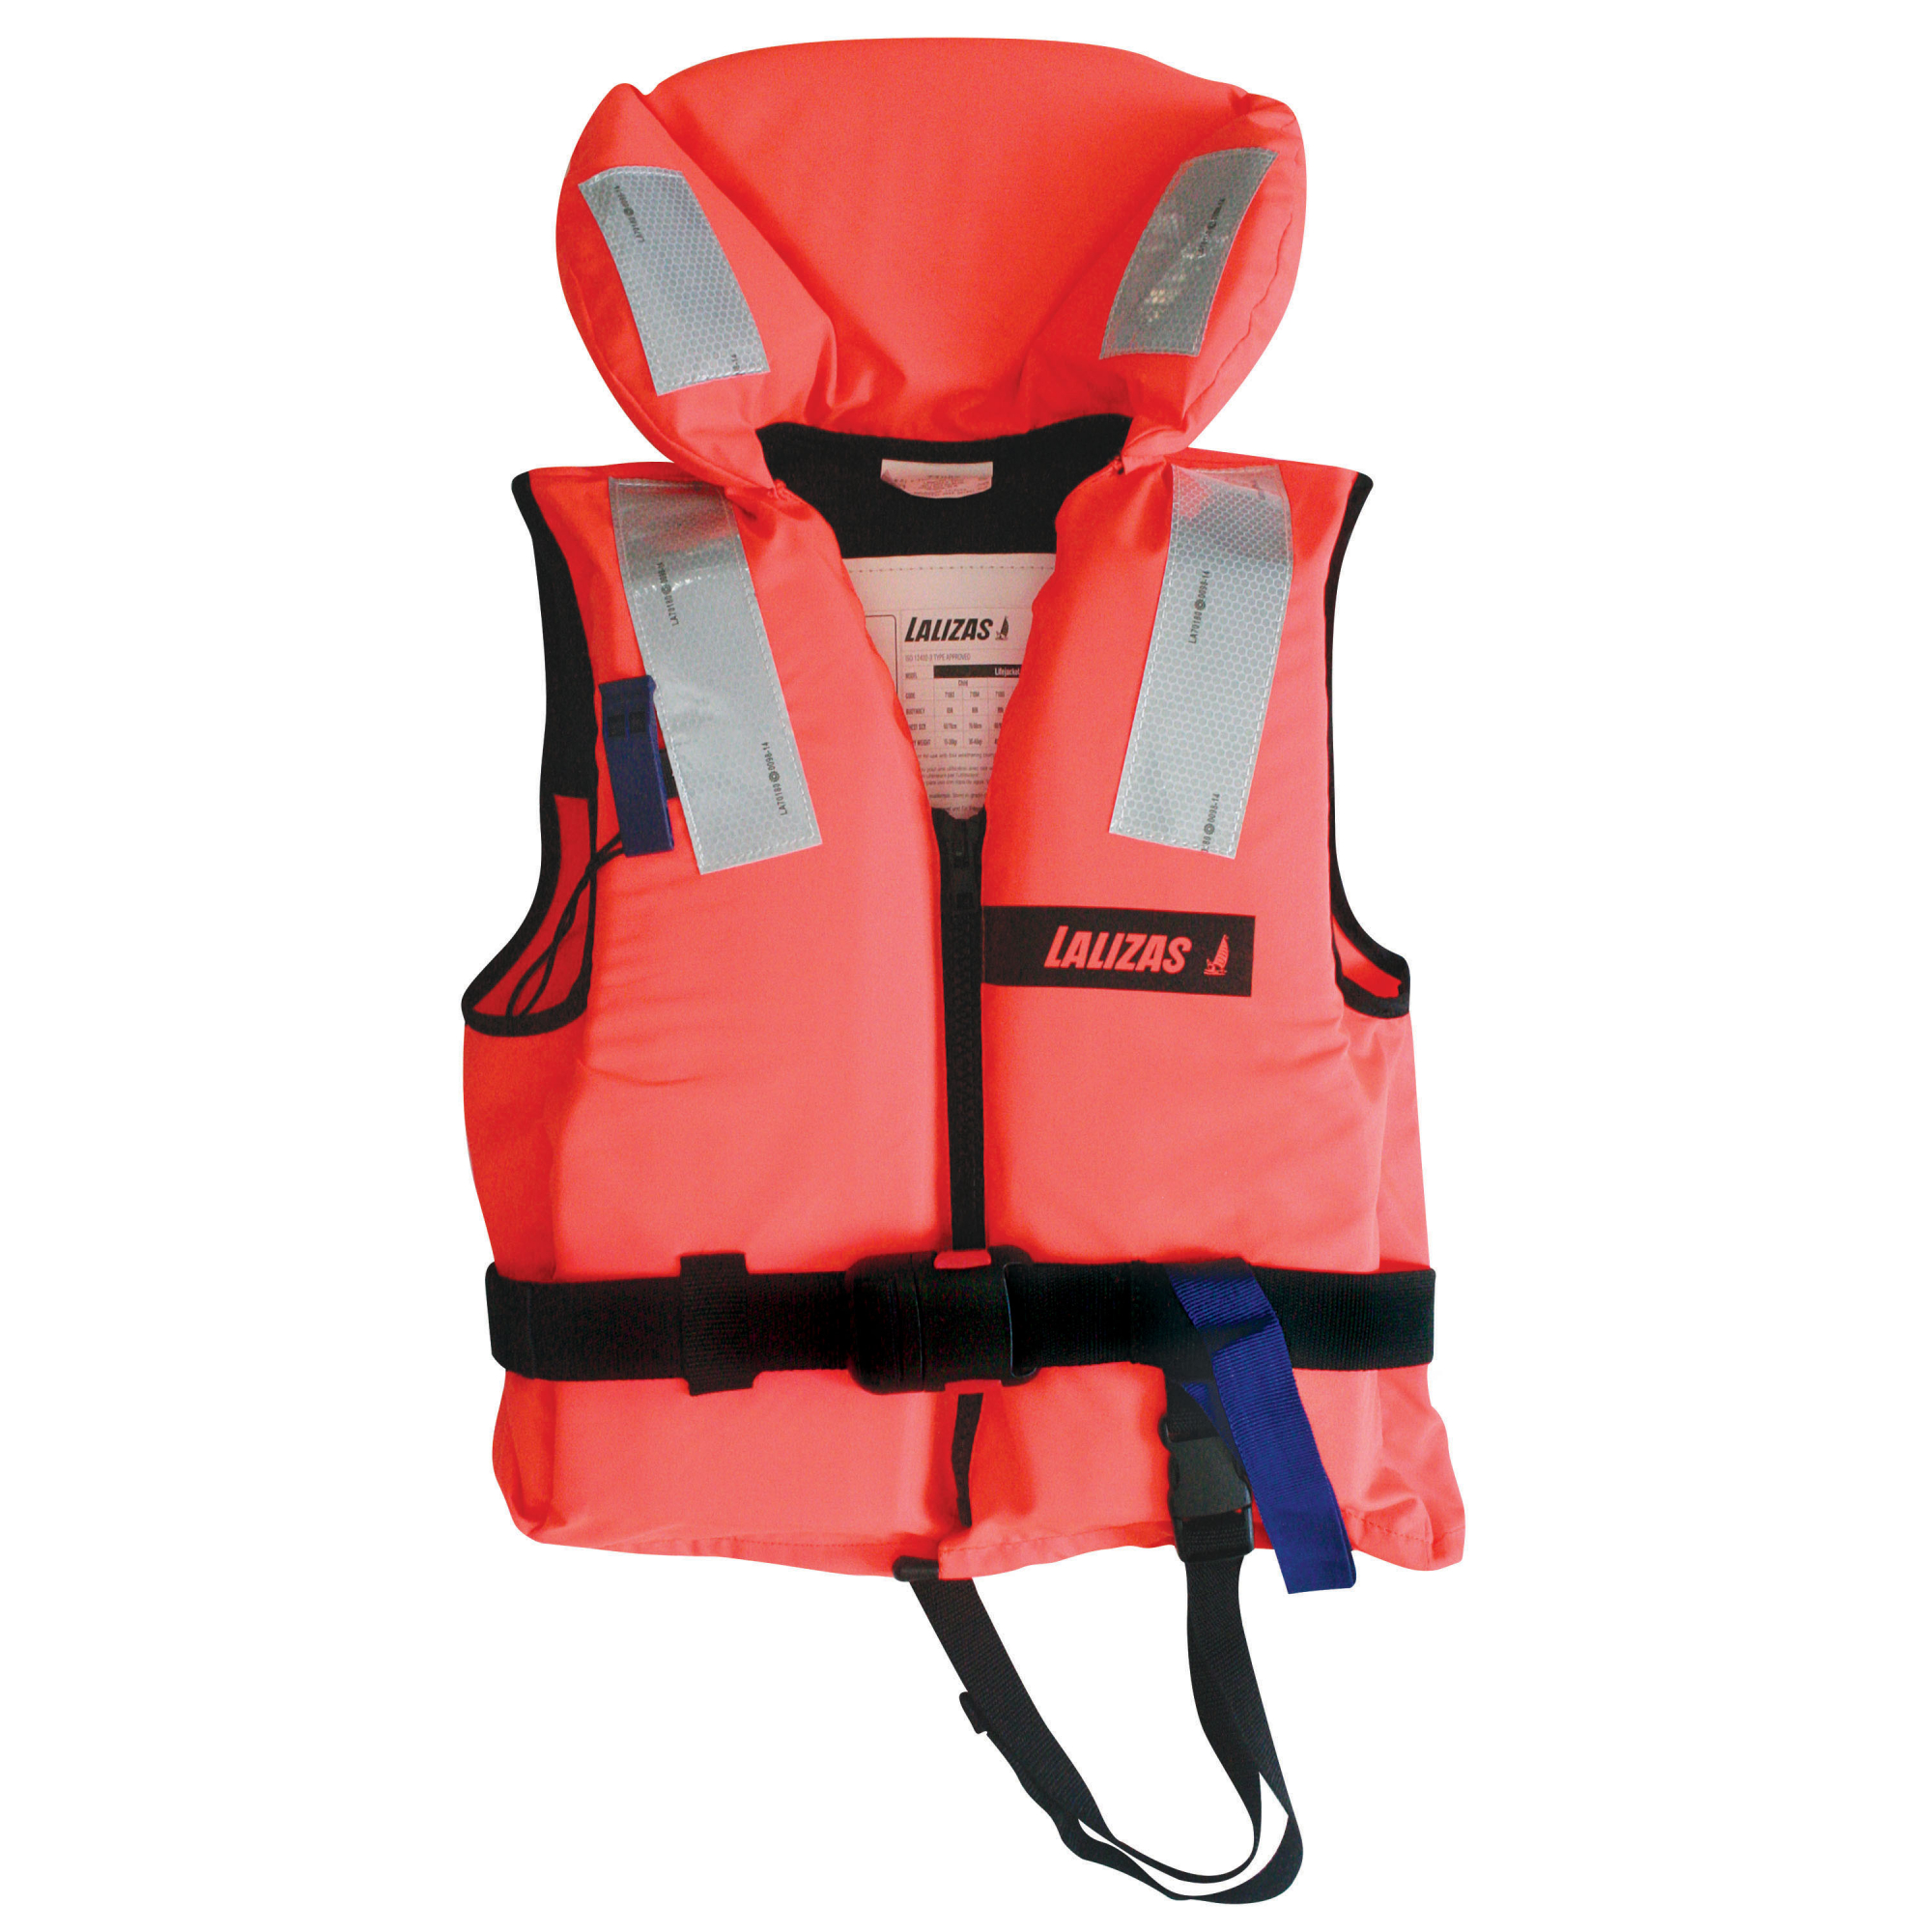 Пенопластовый спасательный жилет LALIZAS Lifejacket 100N 71081 ISO 12402-4 70-90 кг обхват груди 110-120 см